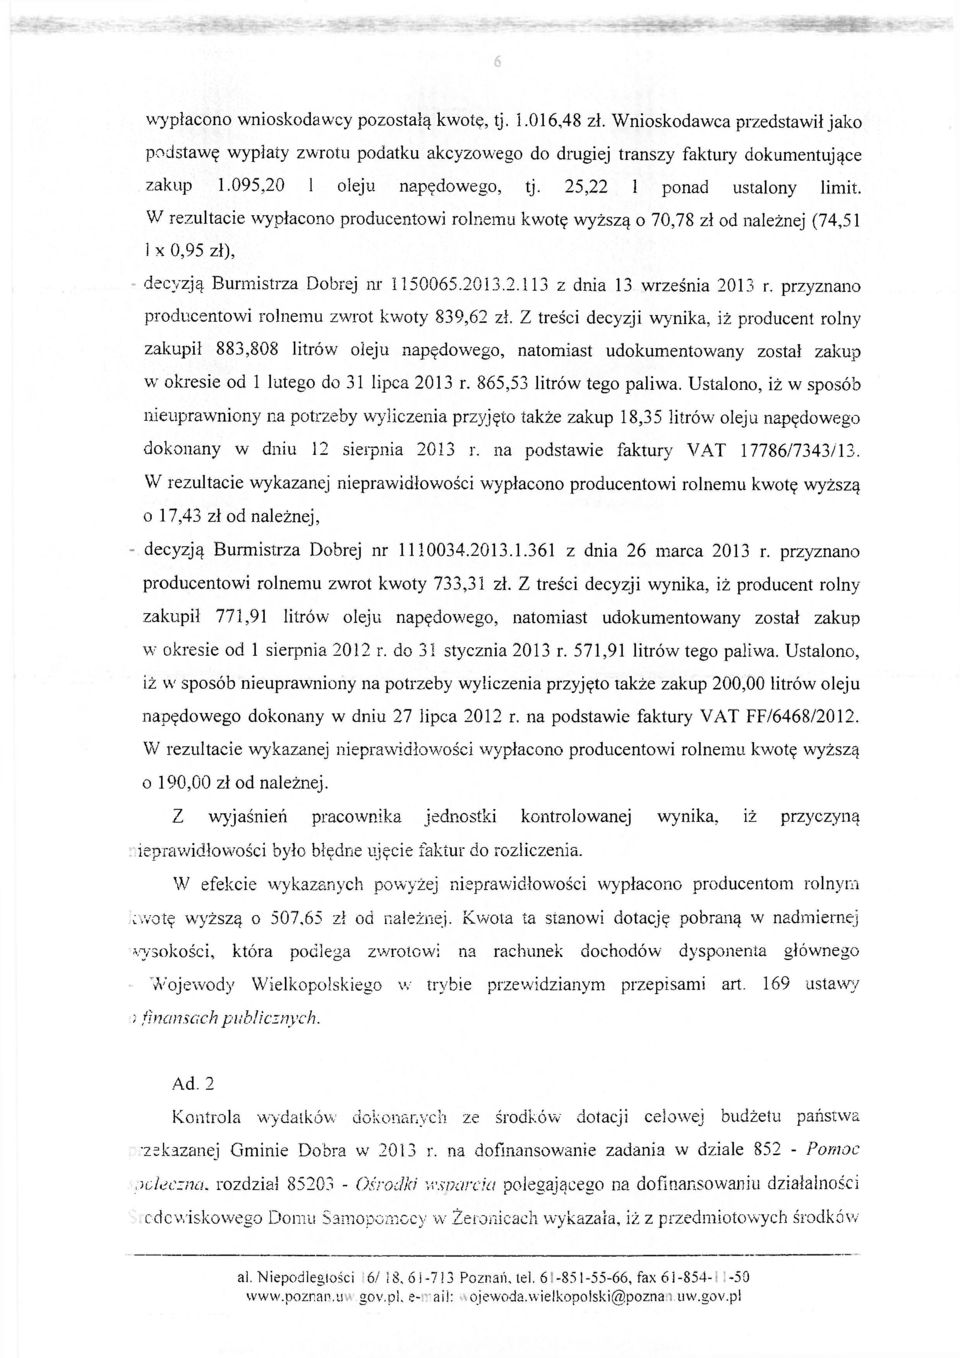 2013.2.113 z dnia 13 września 2013 r. przyznano producentowi rolnemu zwrot kwoty 839,62 zł.